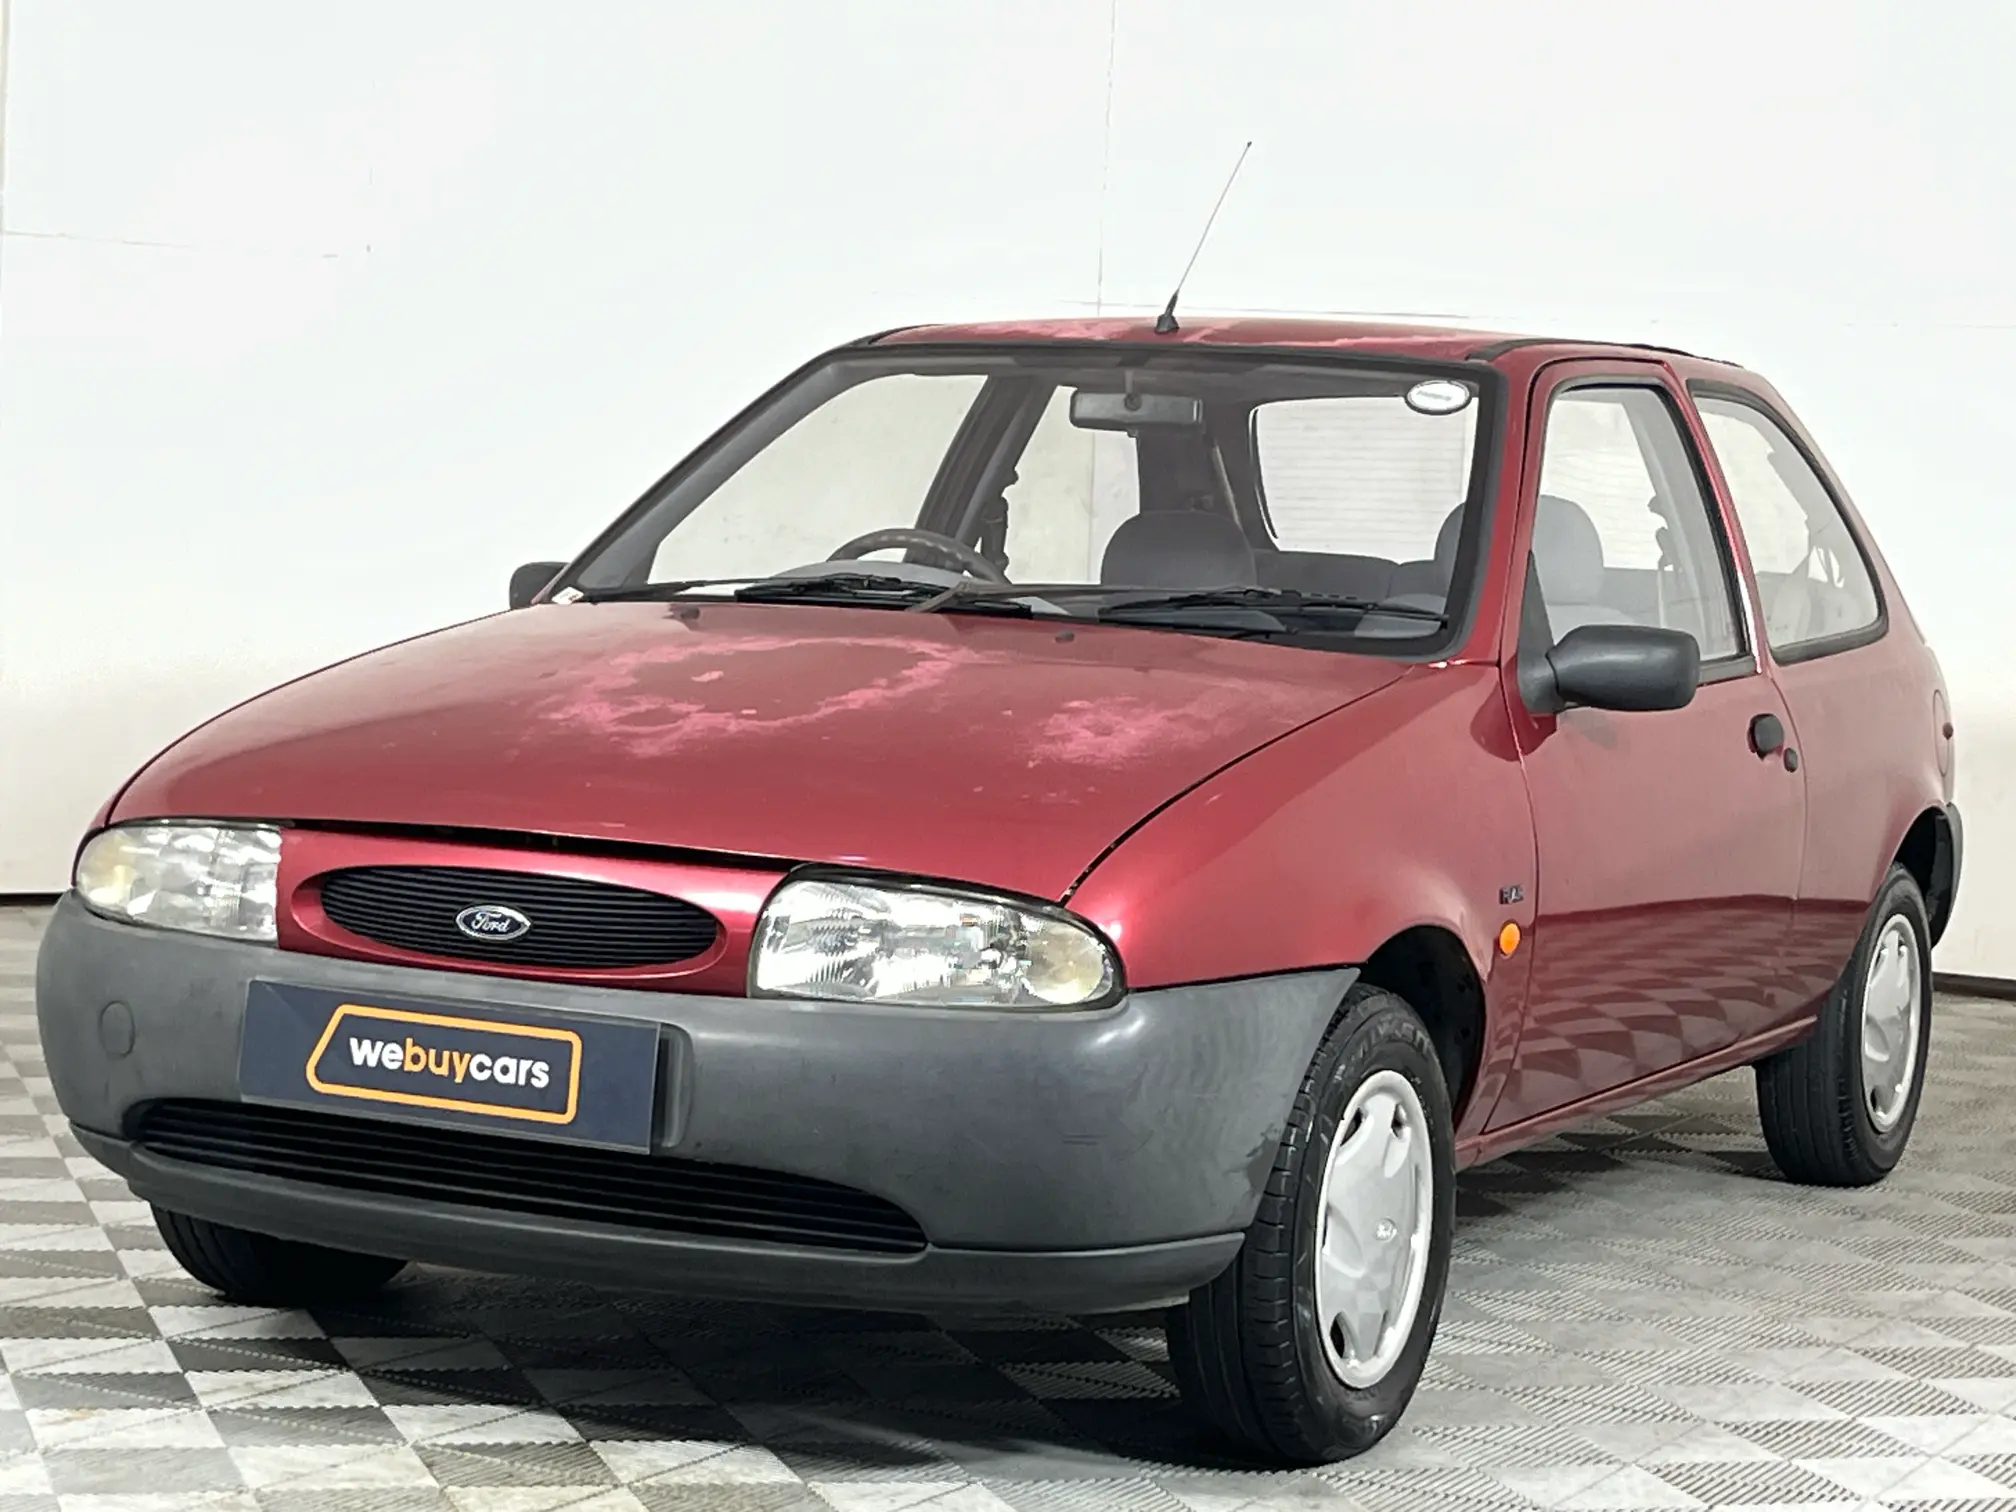 1997 Ford Fiesta Flair 1.3 3D